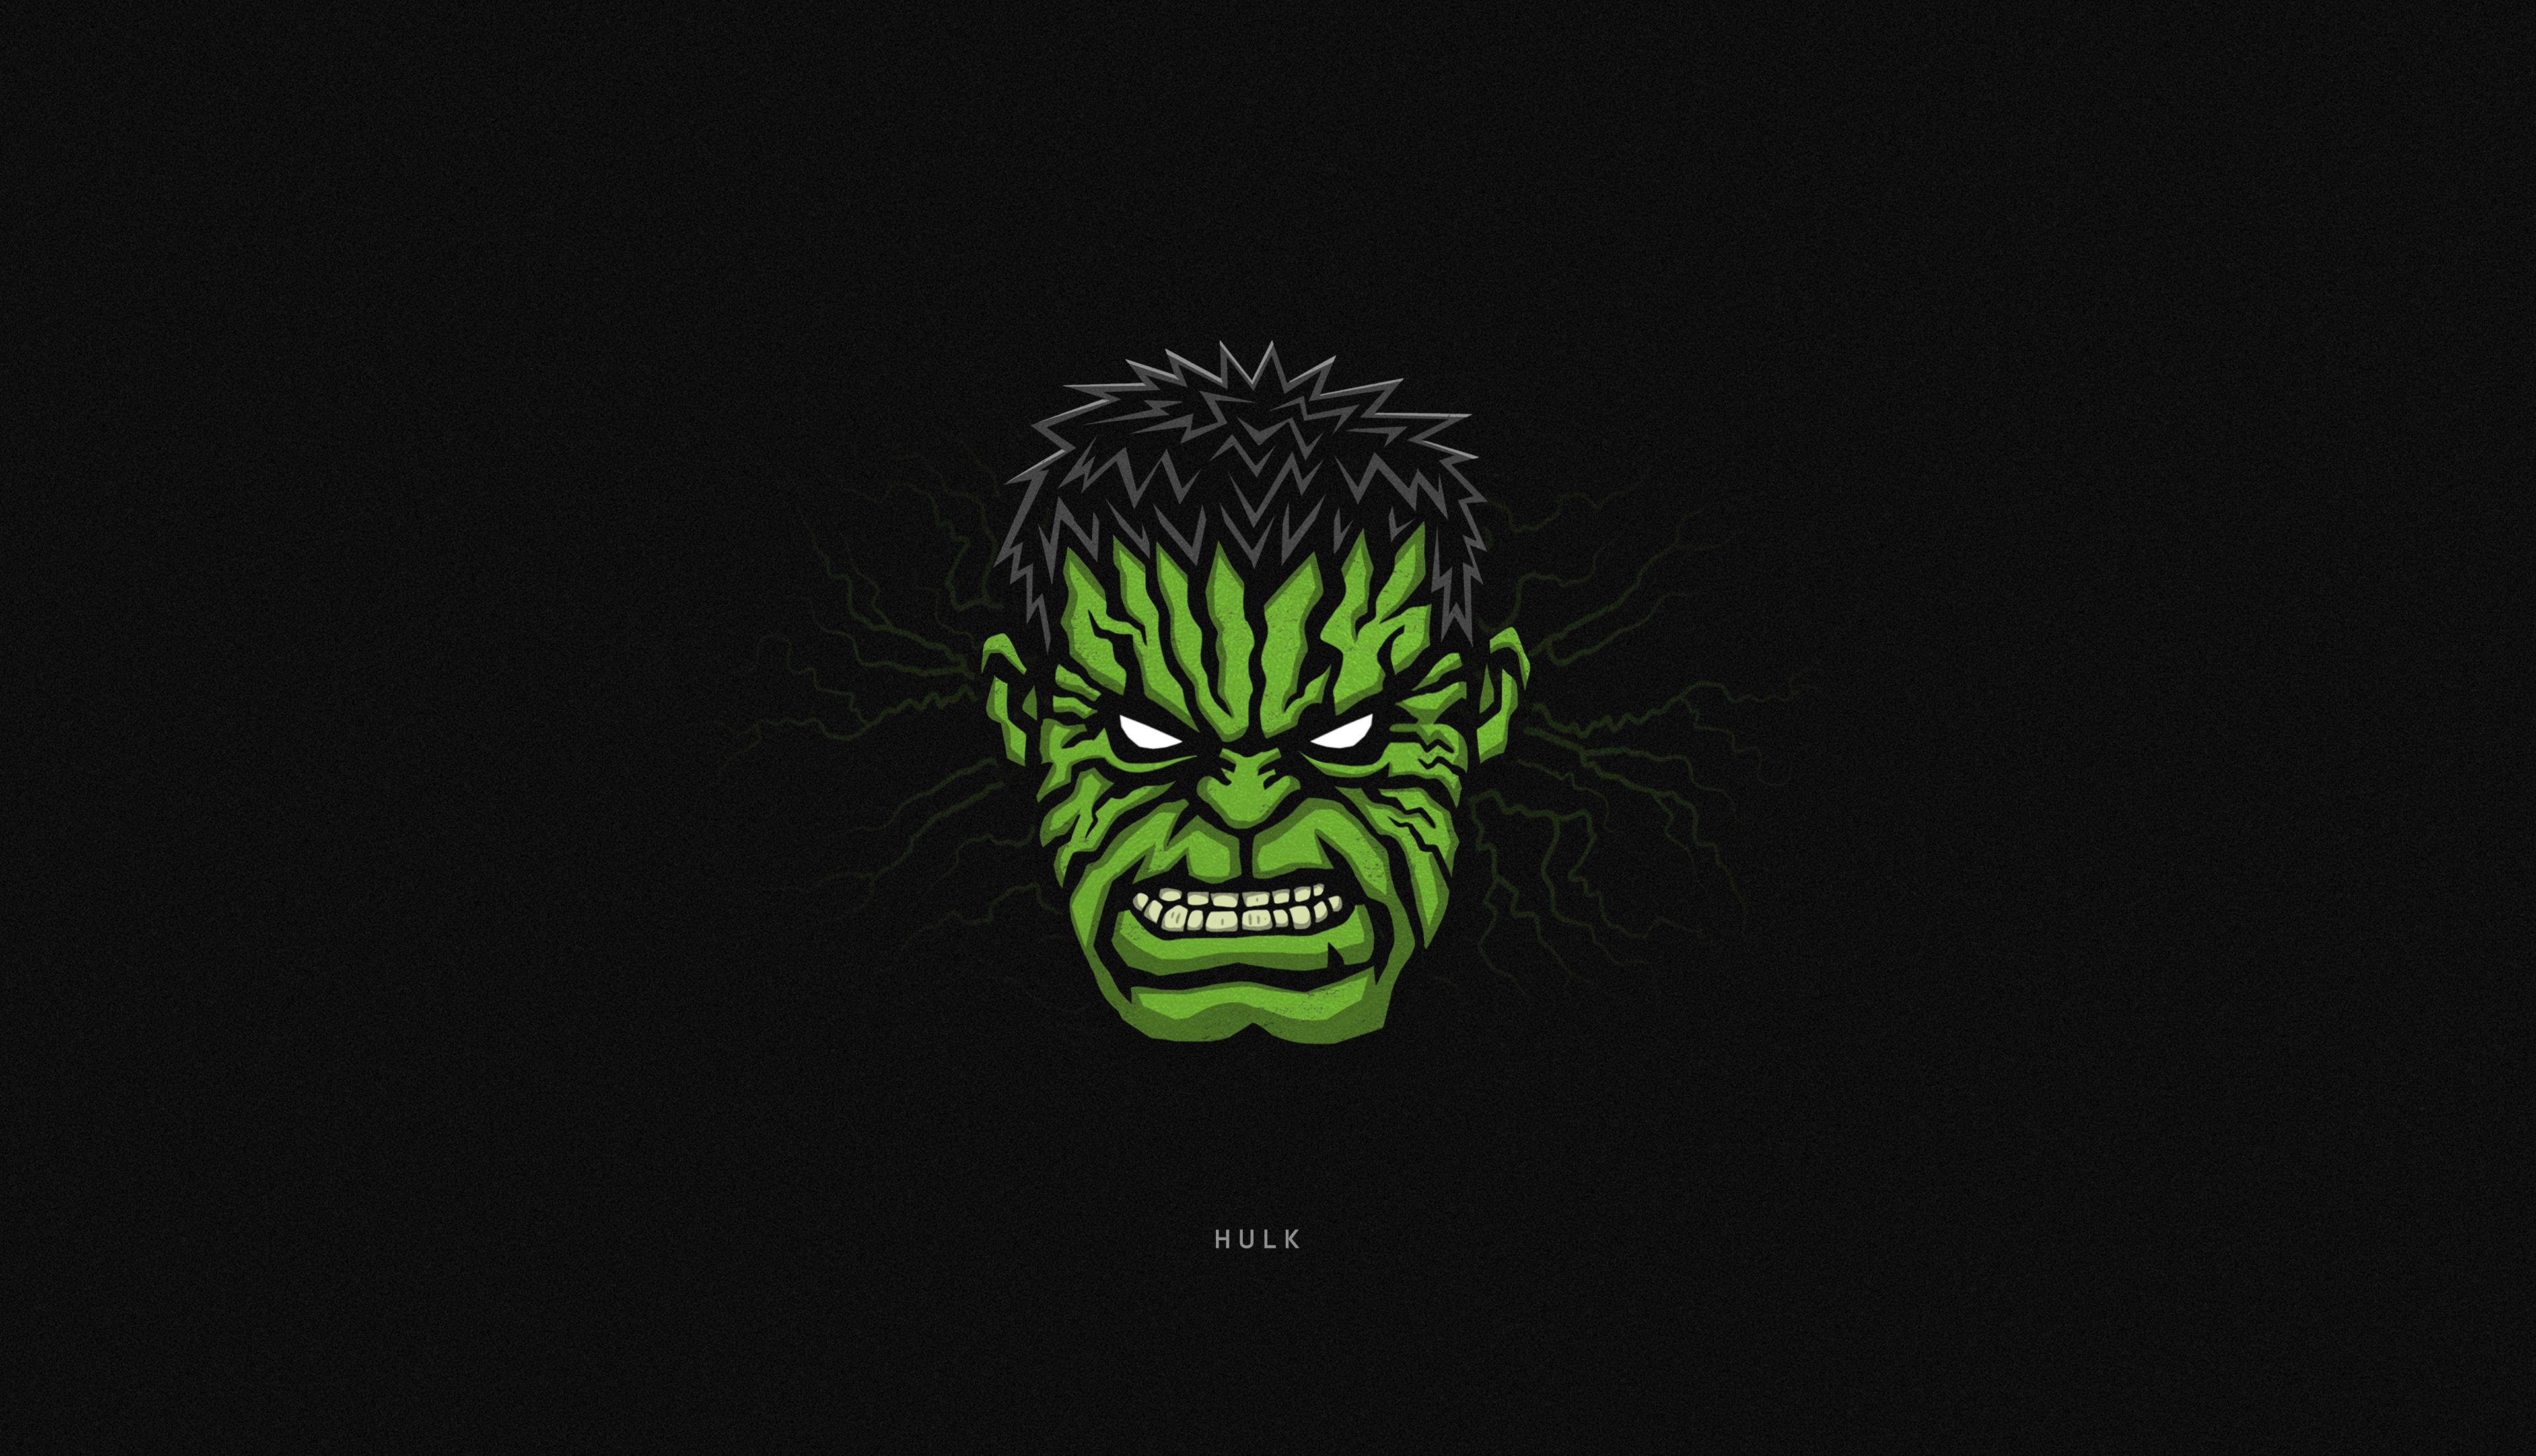 Hulk Superhero Minimalist Wallpaper 4k Ultra HD ID:10418